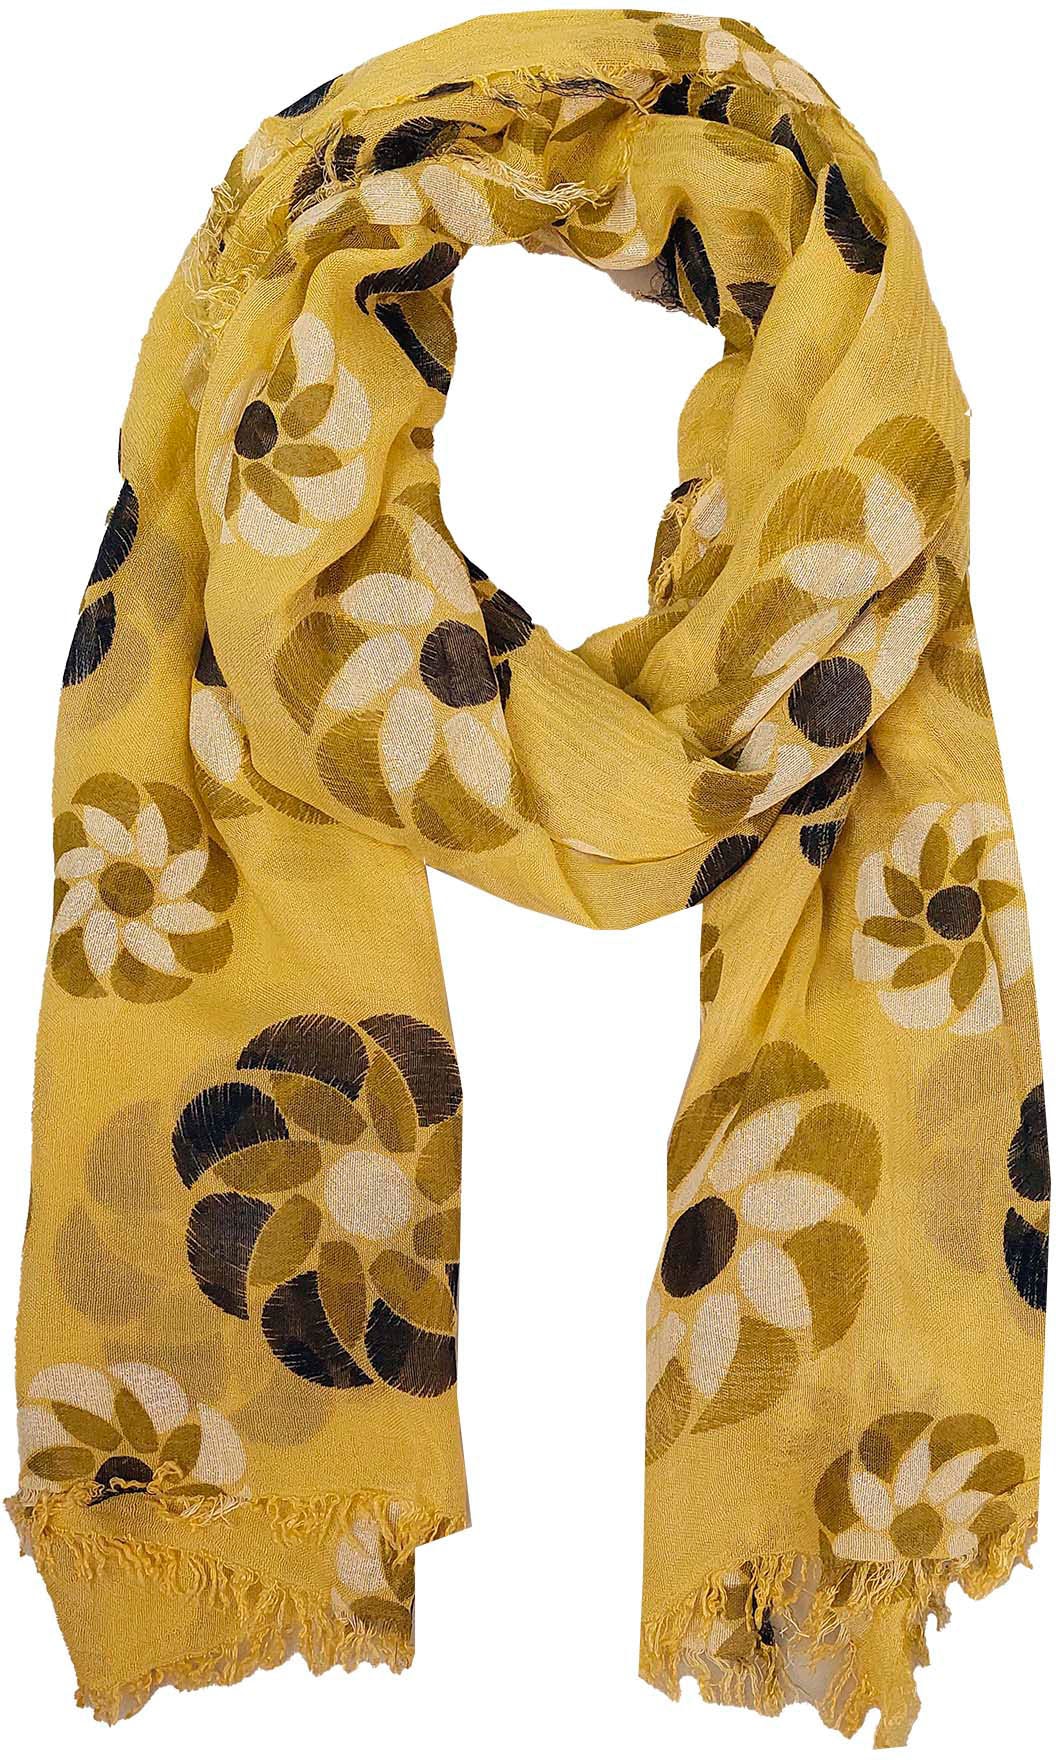 zu Top-Preisen günstige & Damen online | OTTO Schals kaufen Tücher